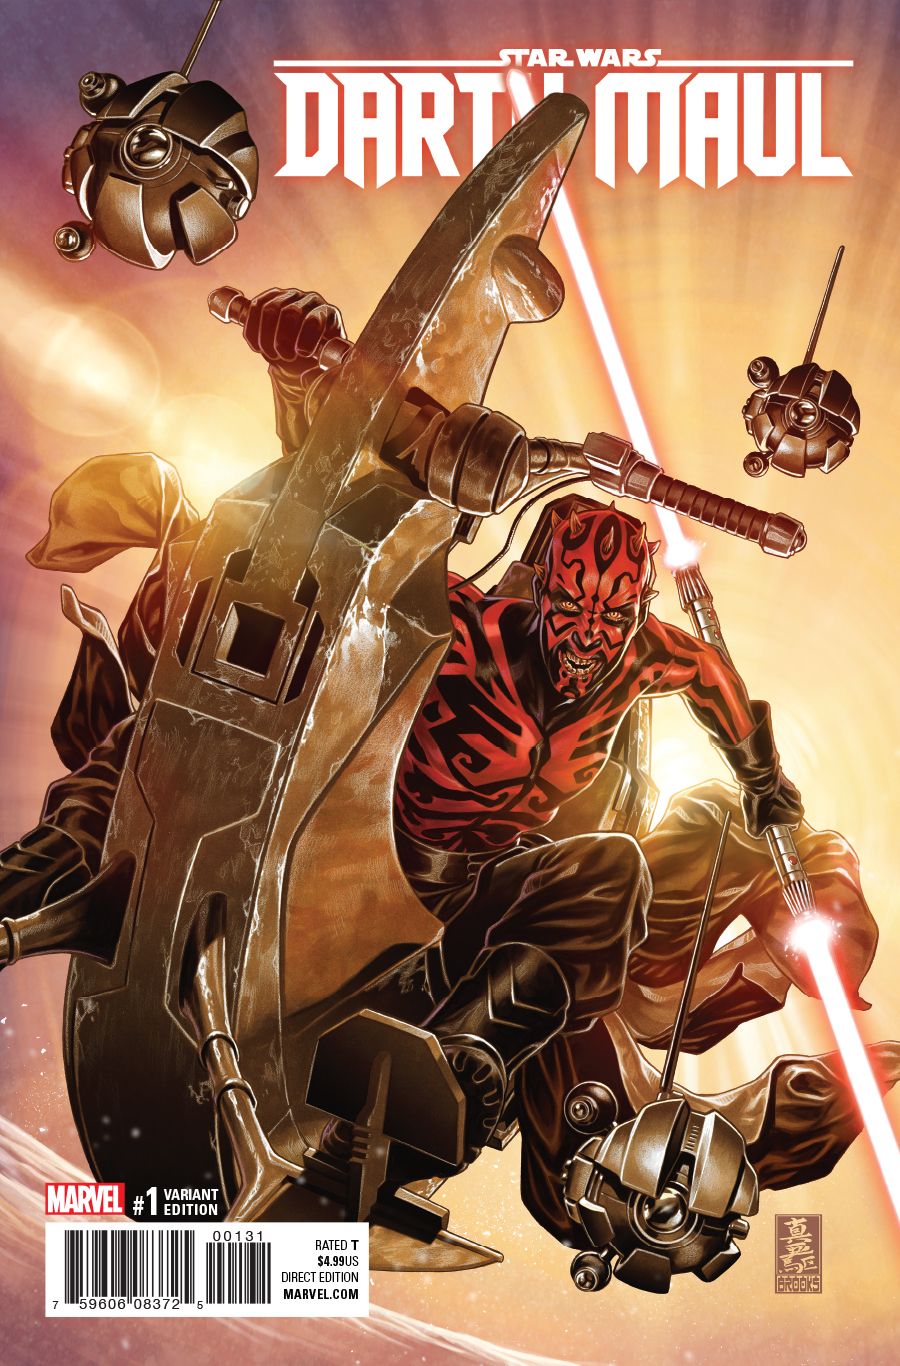 Roblox Star Wars Lightsaber Battles 2 Lightning Glitch Roblox - roblox star wars lightsaber battles 2 script